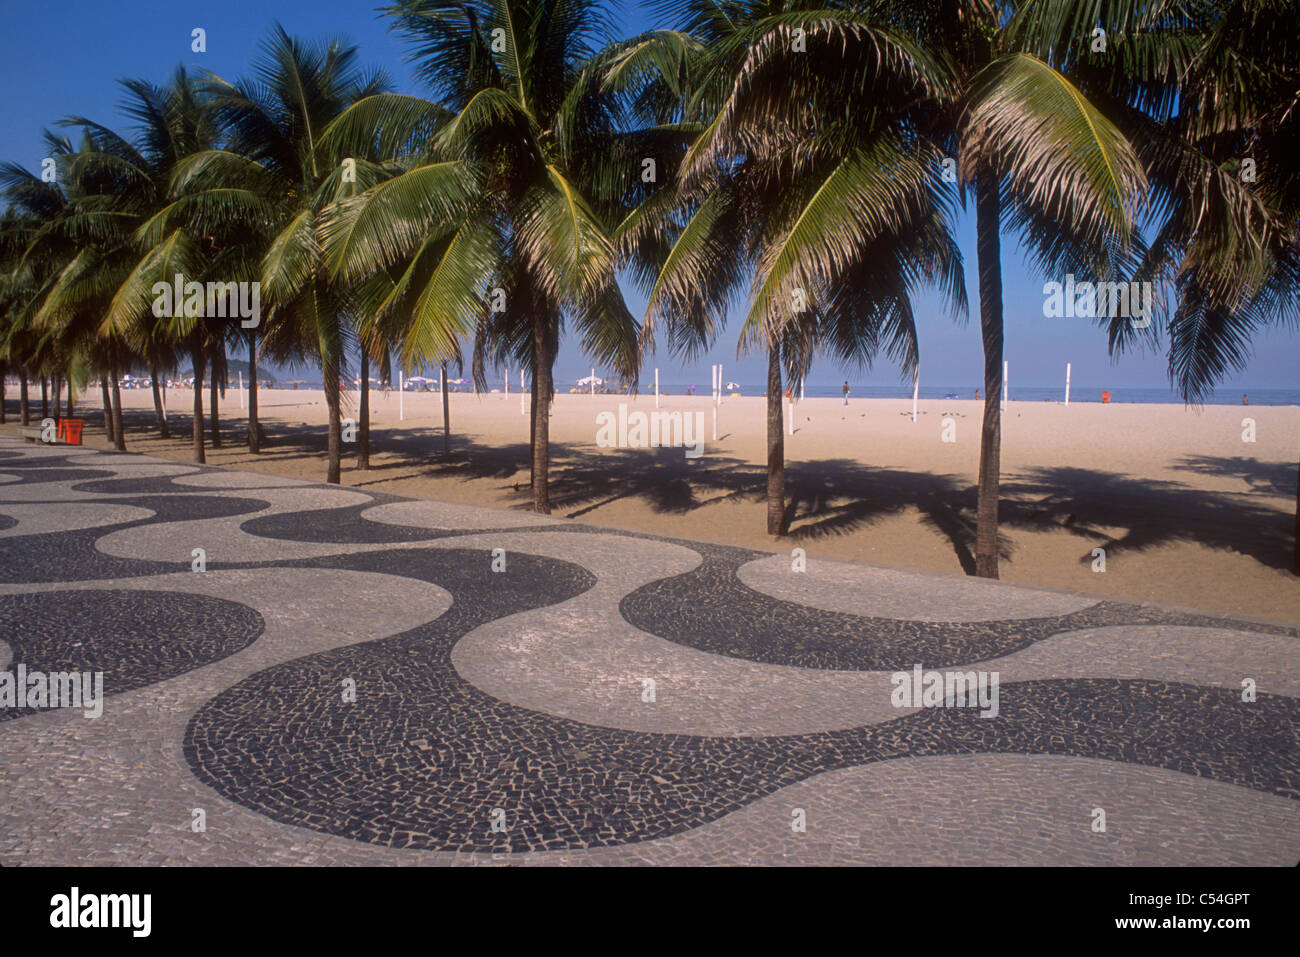 Palmiers au trottoir de la plage de Copacabana, Rio de Janeiro, Brésil. Banque D'Images